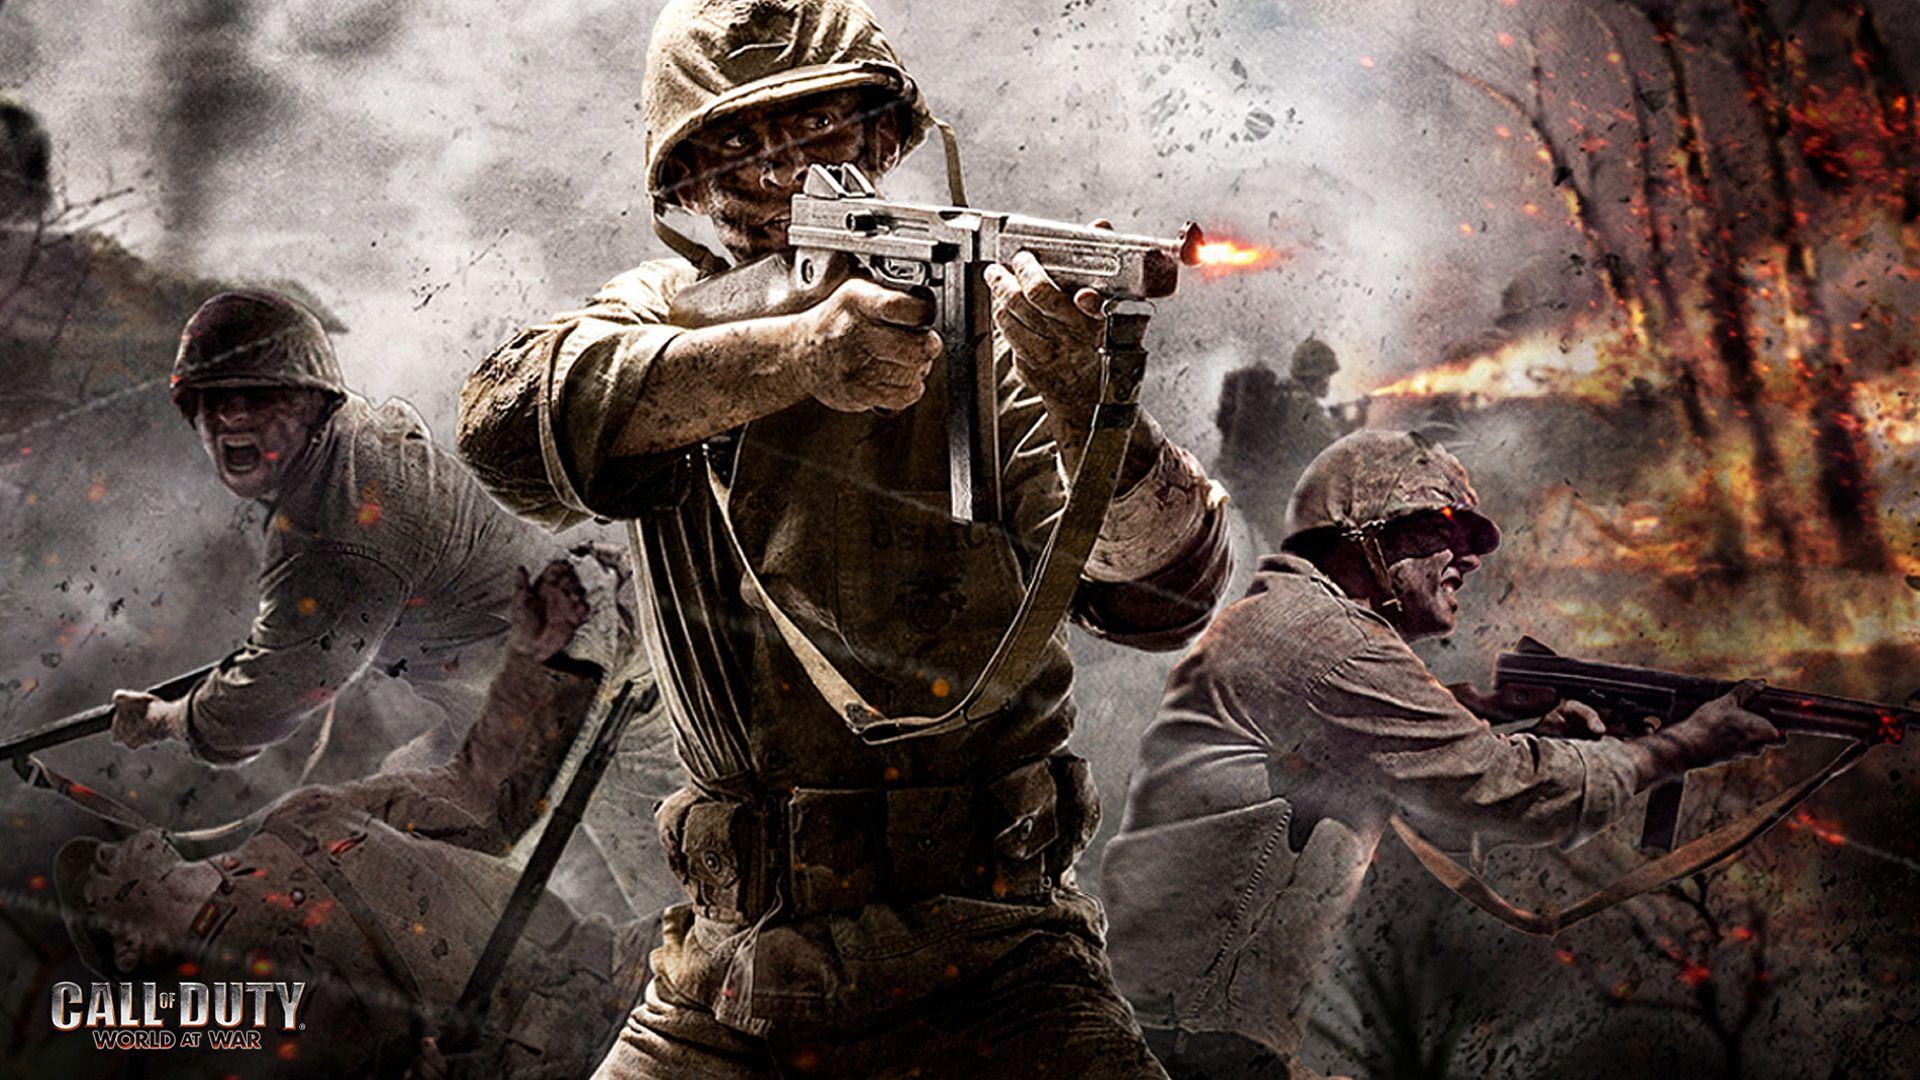 Call Of Duty World At War Wallpaper 2487 2605 Hd Wallpaper